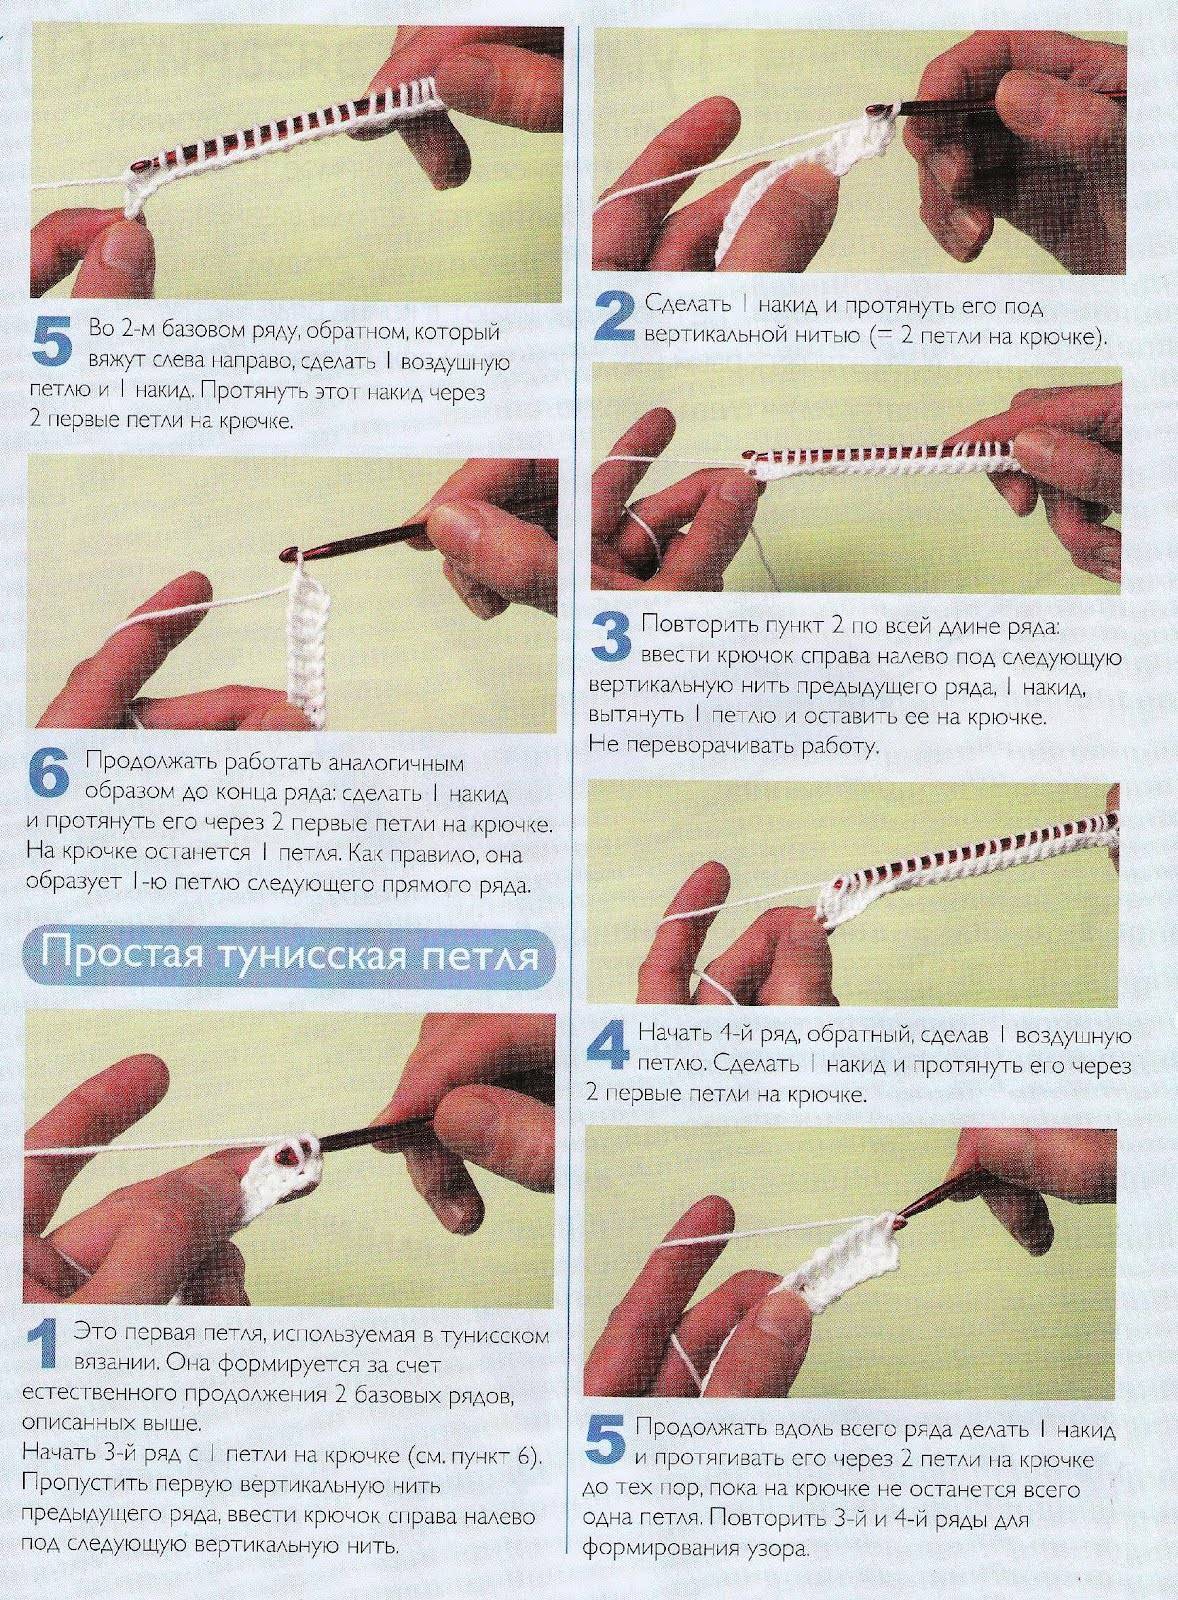 Тунисский метод вязания крючком для начинающих